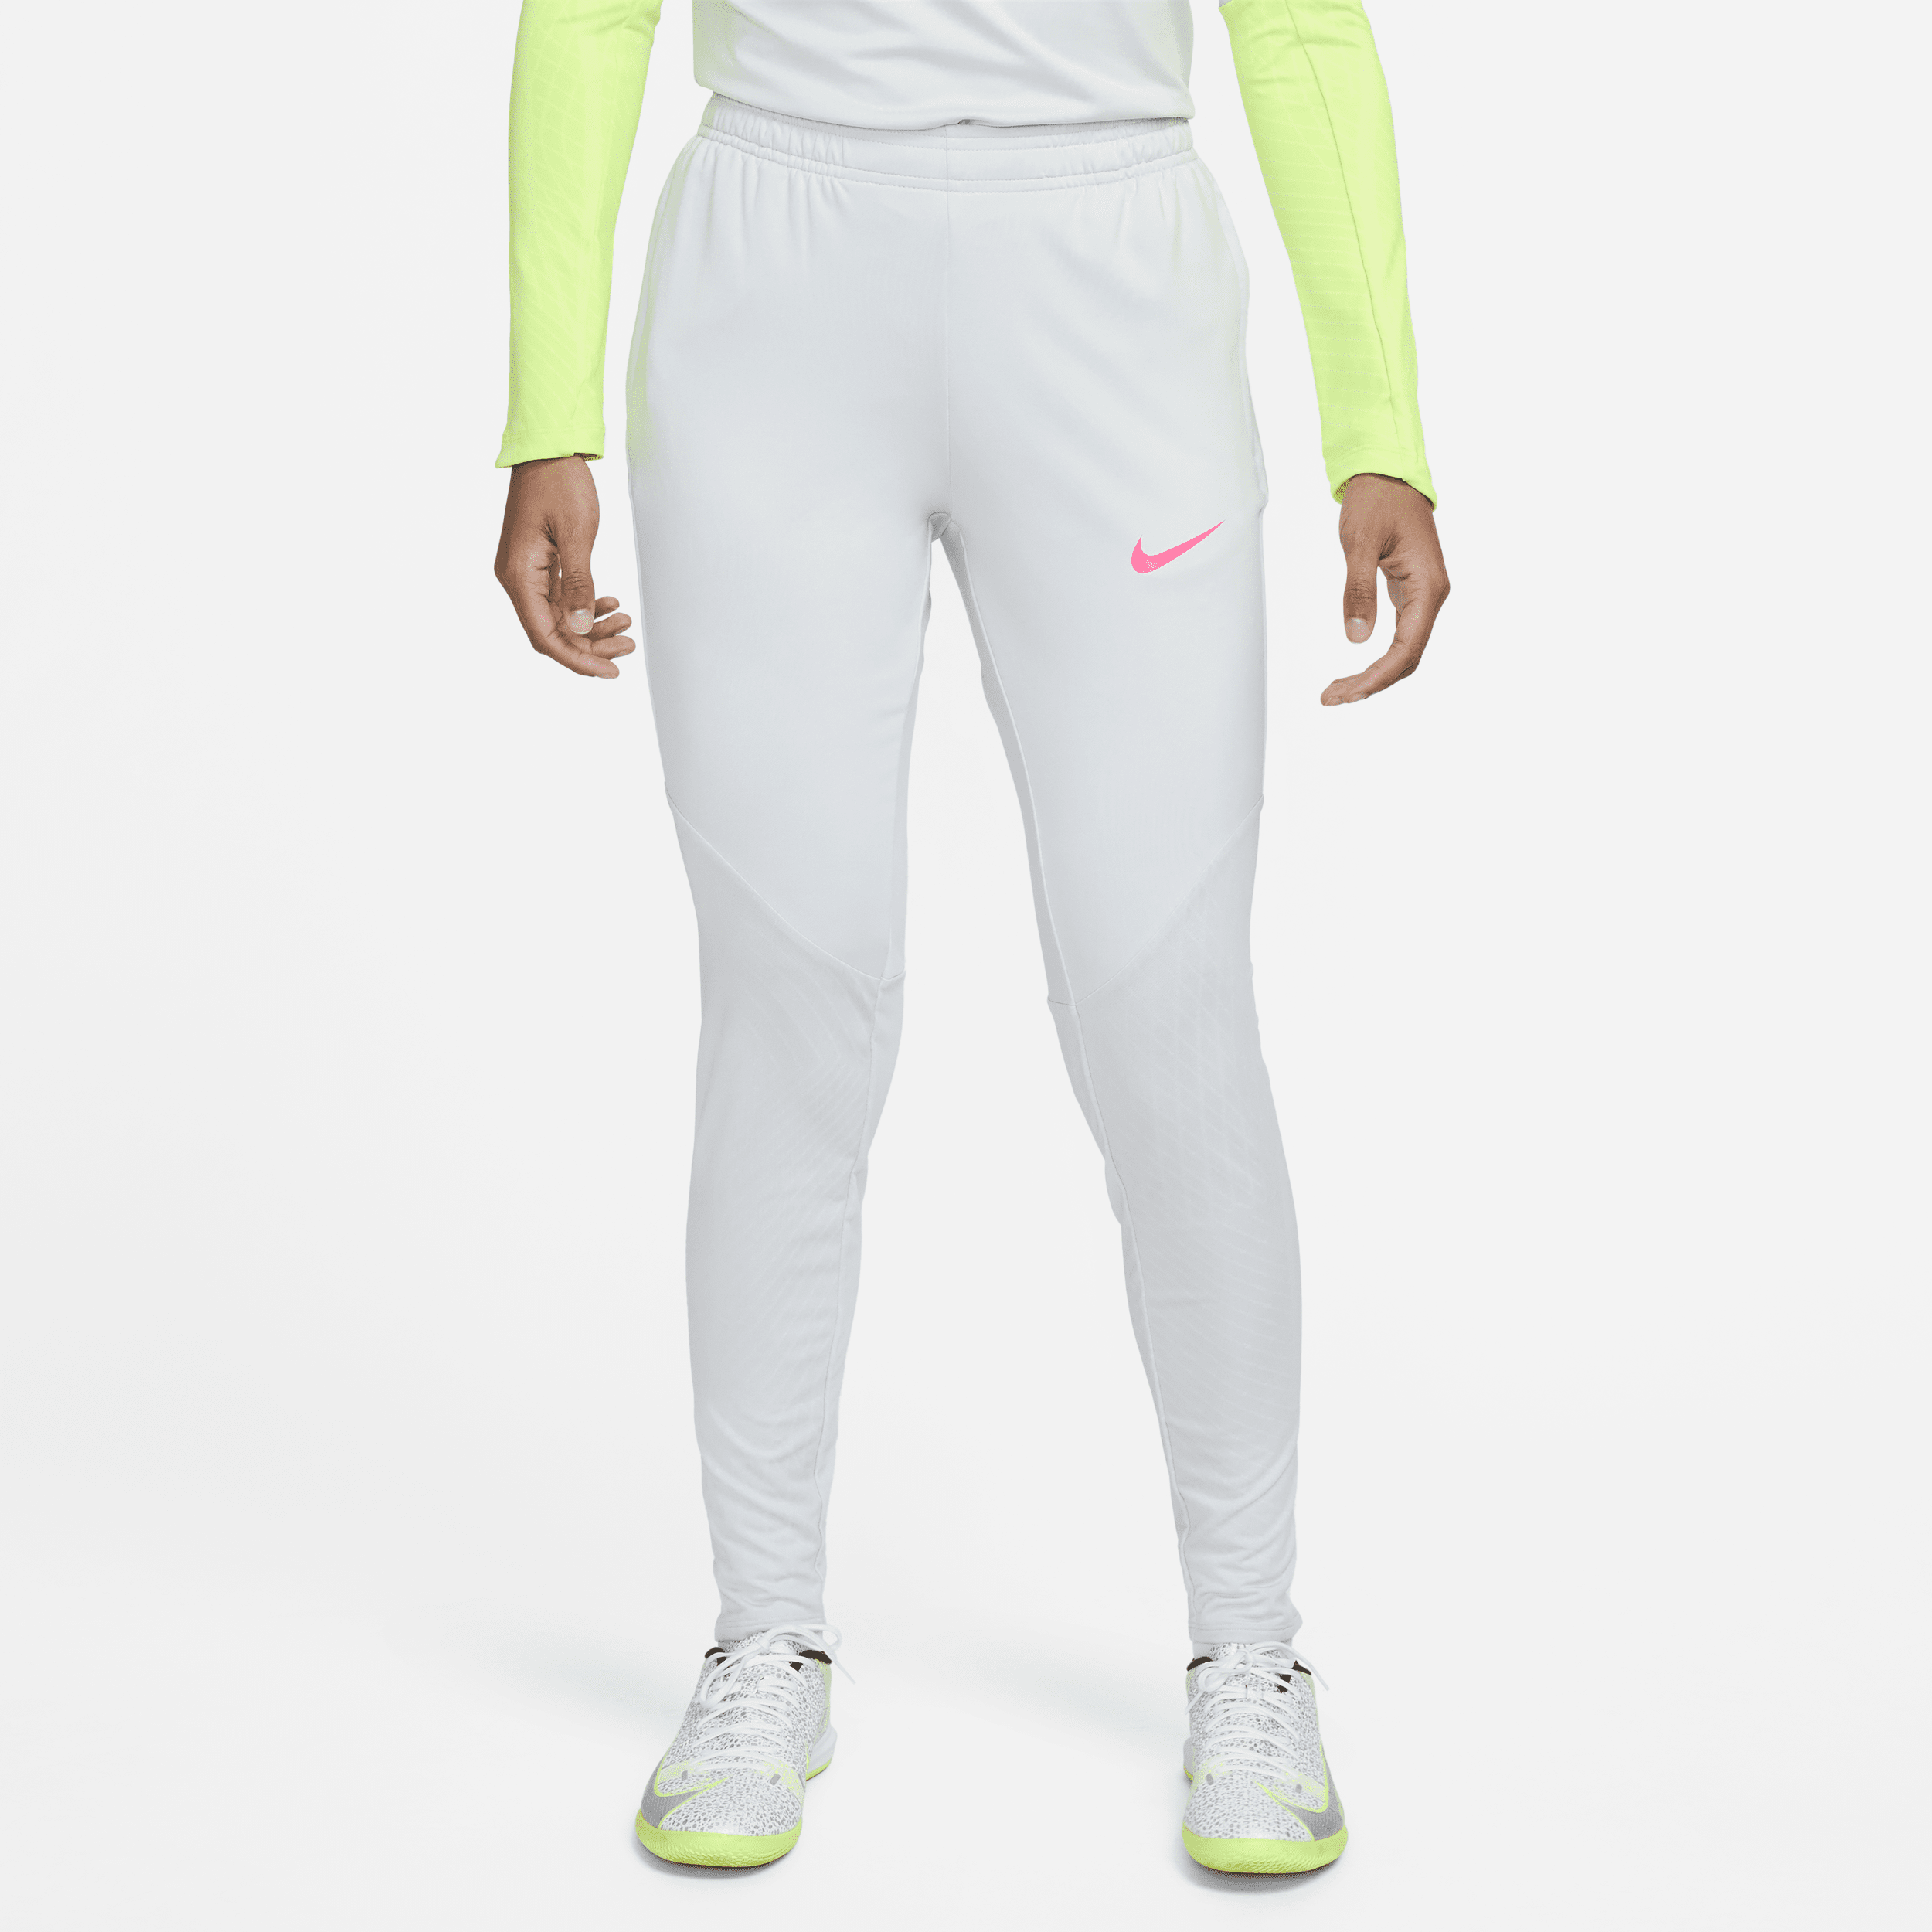 Nike Dri-FIT Strike-fodboldbukser til kvinder - grå